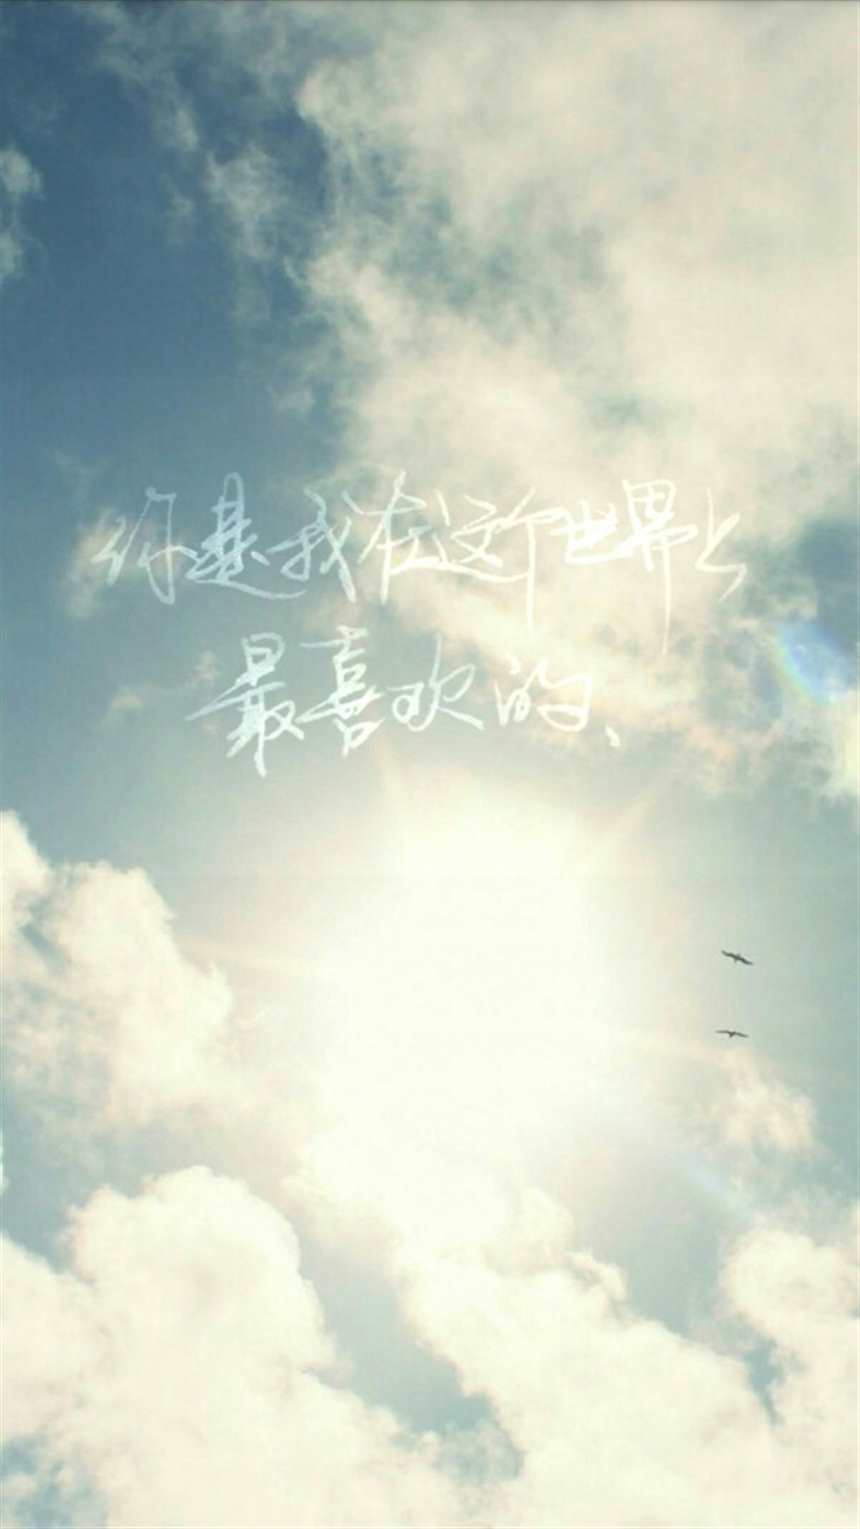 《我不喜欢这世界我只喜欢你》手写 壁纸#天空#小清新